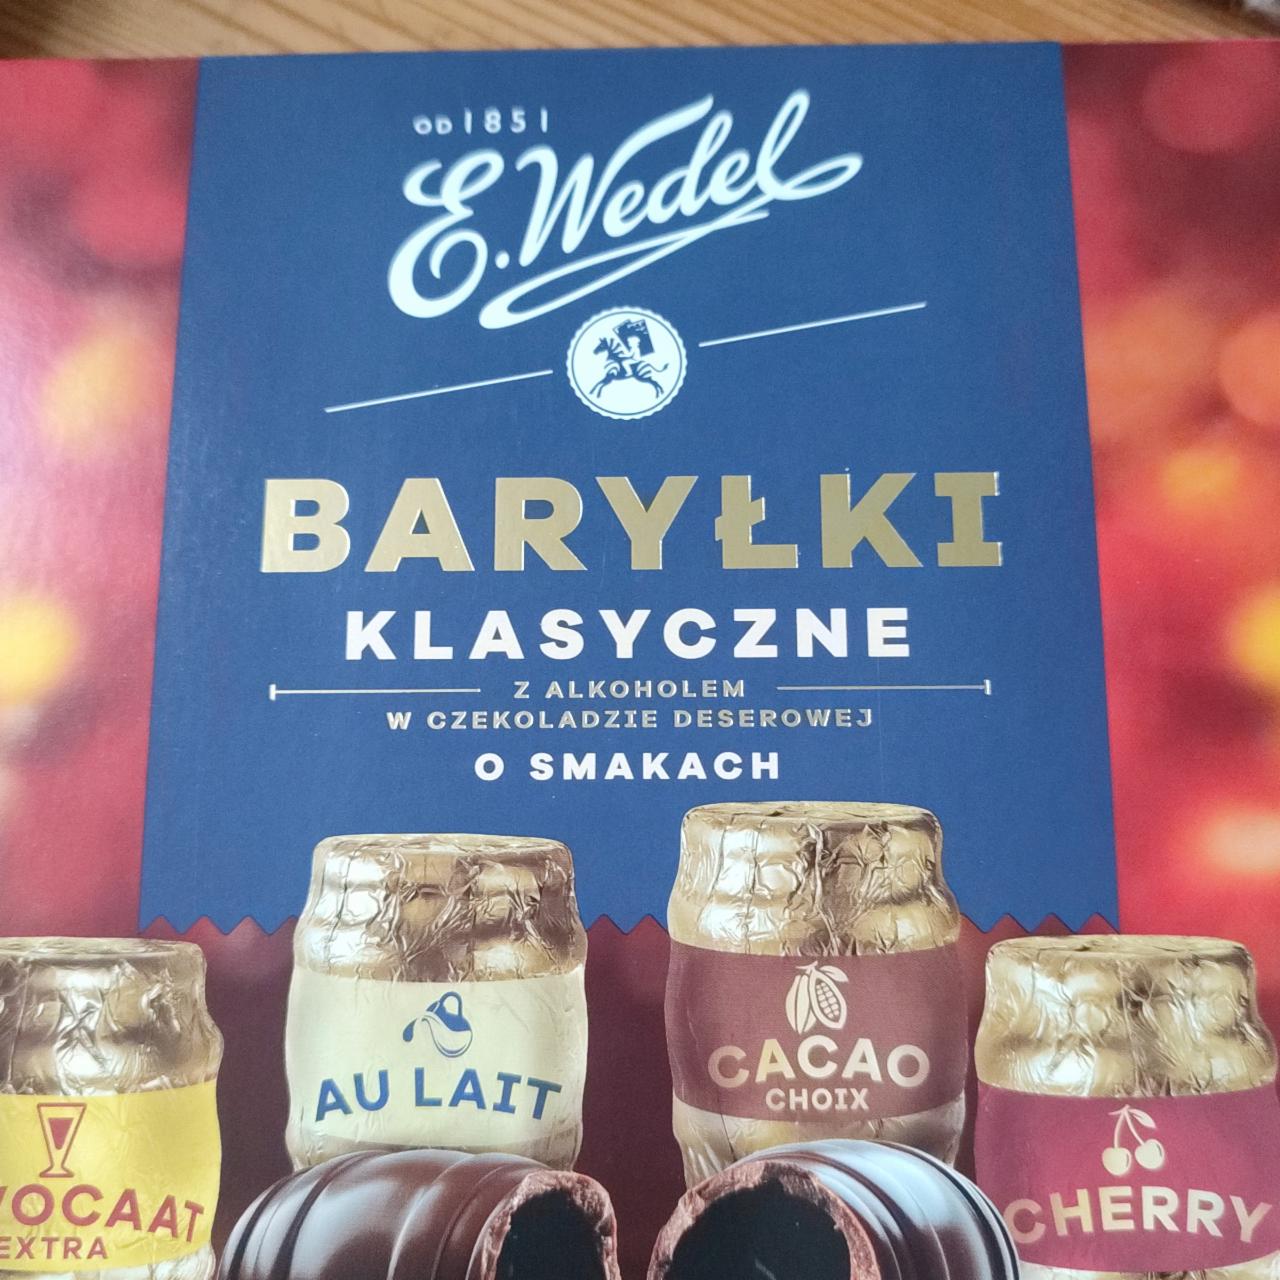 Фото - Шоколадні цукерки Вarylki з алкоголем E. Wedel